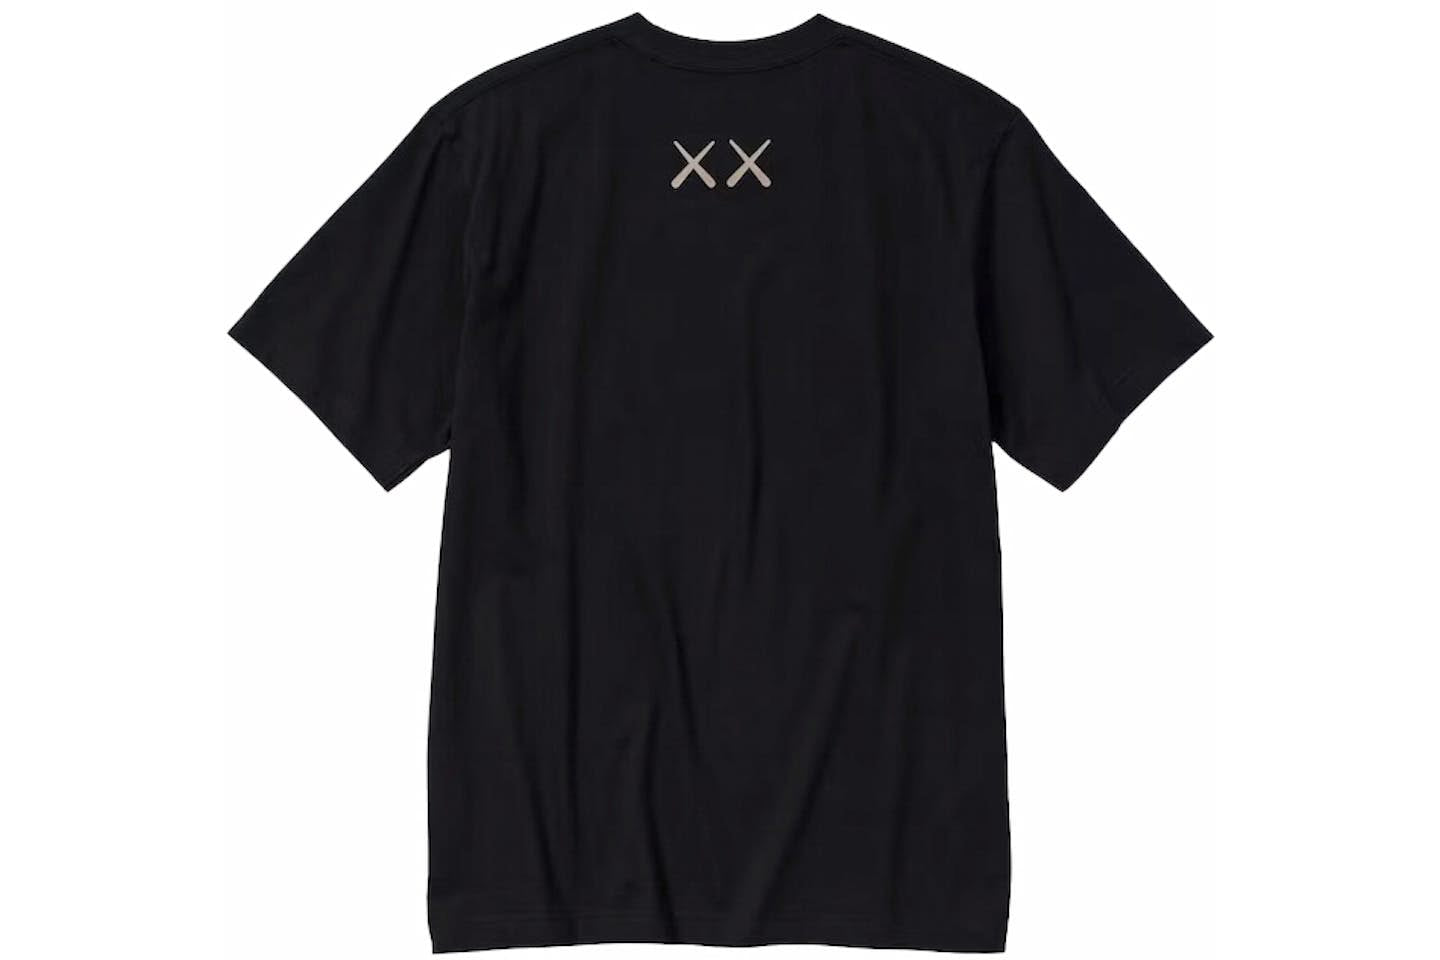 KAWS x Uniqlo UT Short Sleeve Graphic Black T-shirt